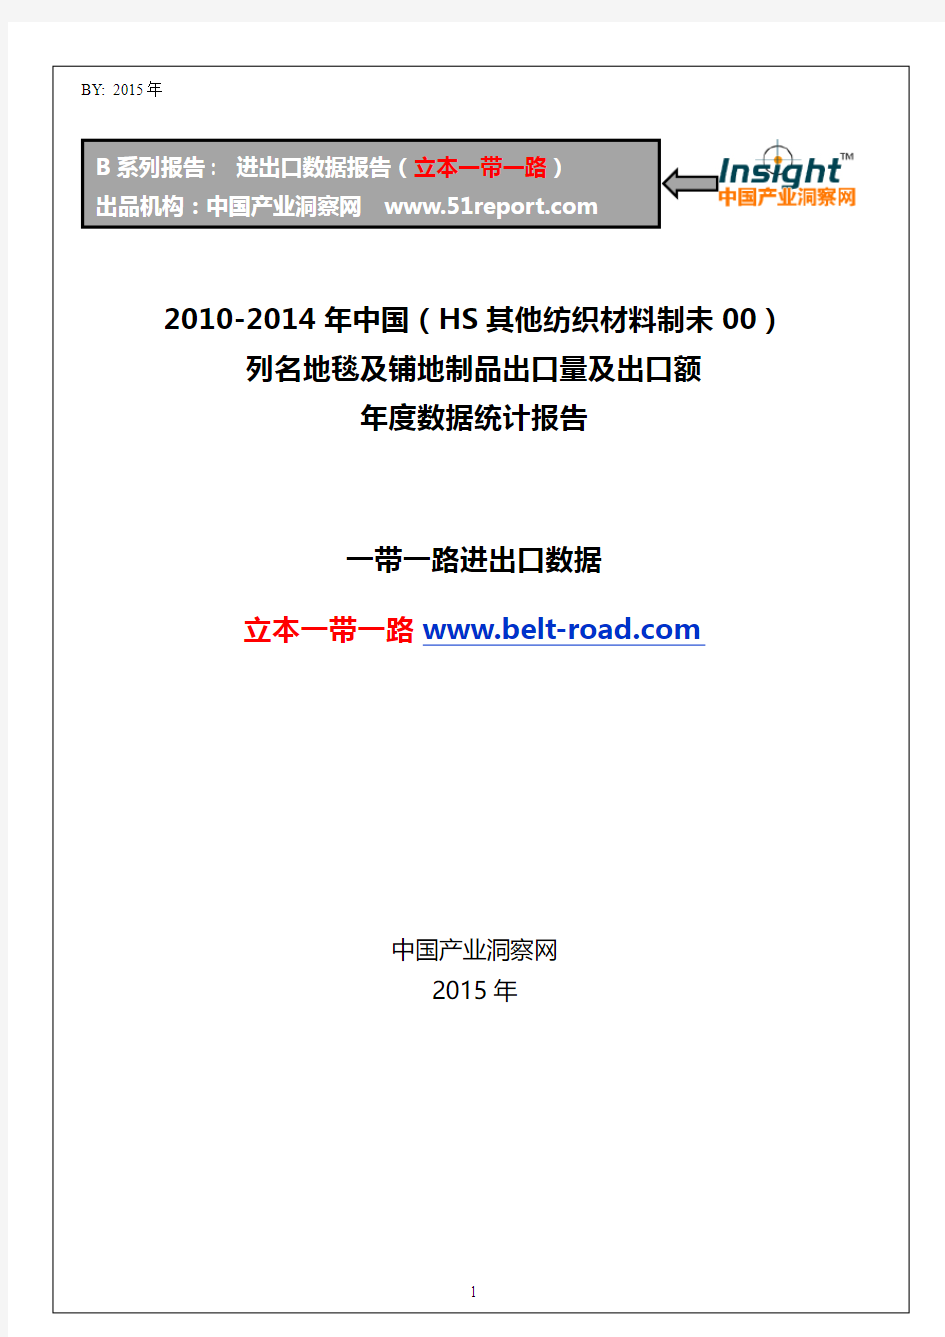 2010-2014年中国(HS其他纺织材料制未00)列名地毯及铺地制品出口量及出口额年度数据统计报告